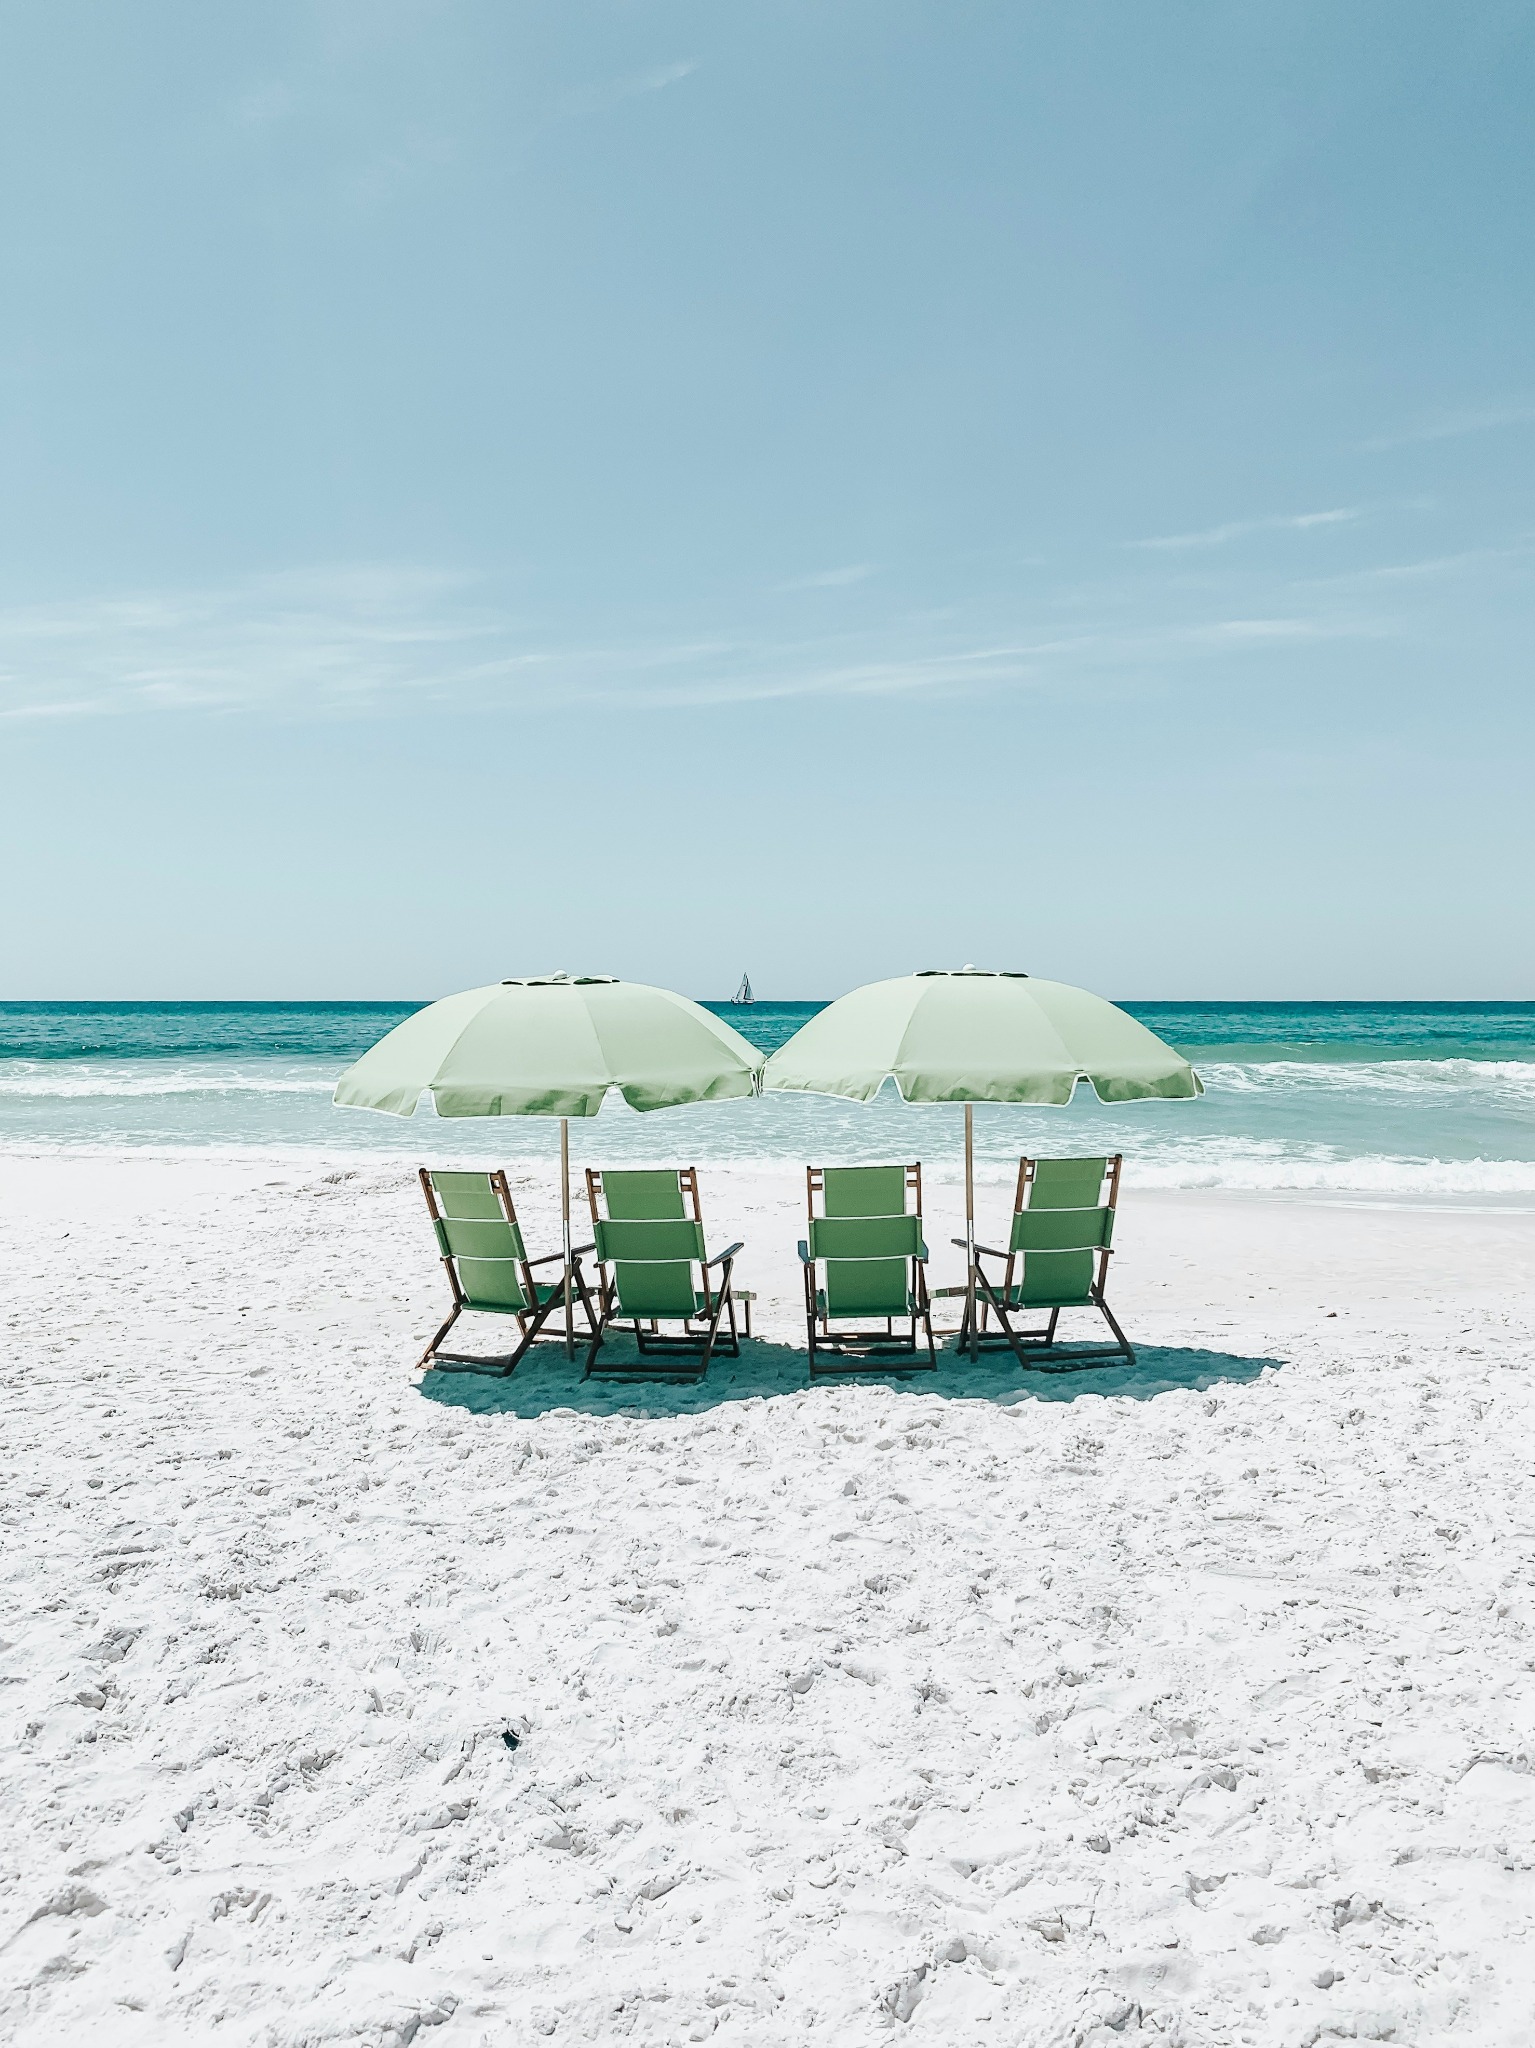 Green beach umbrellas chairs